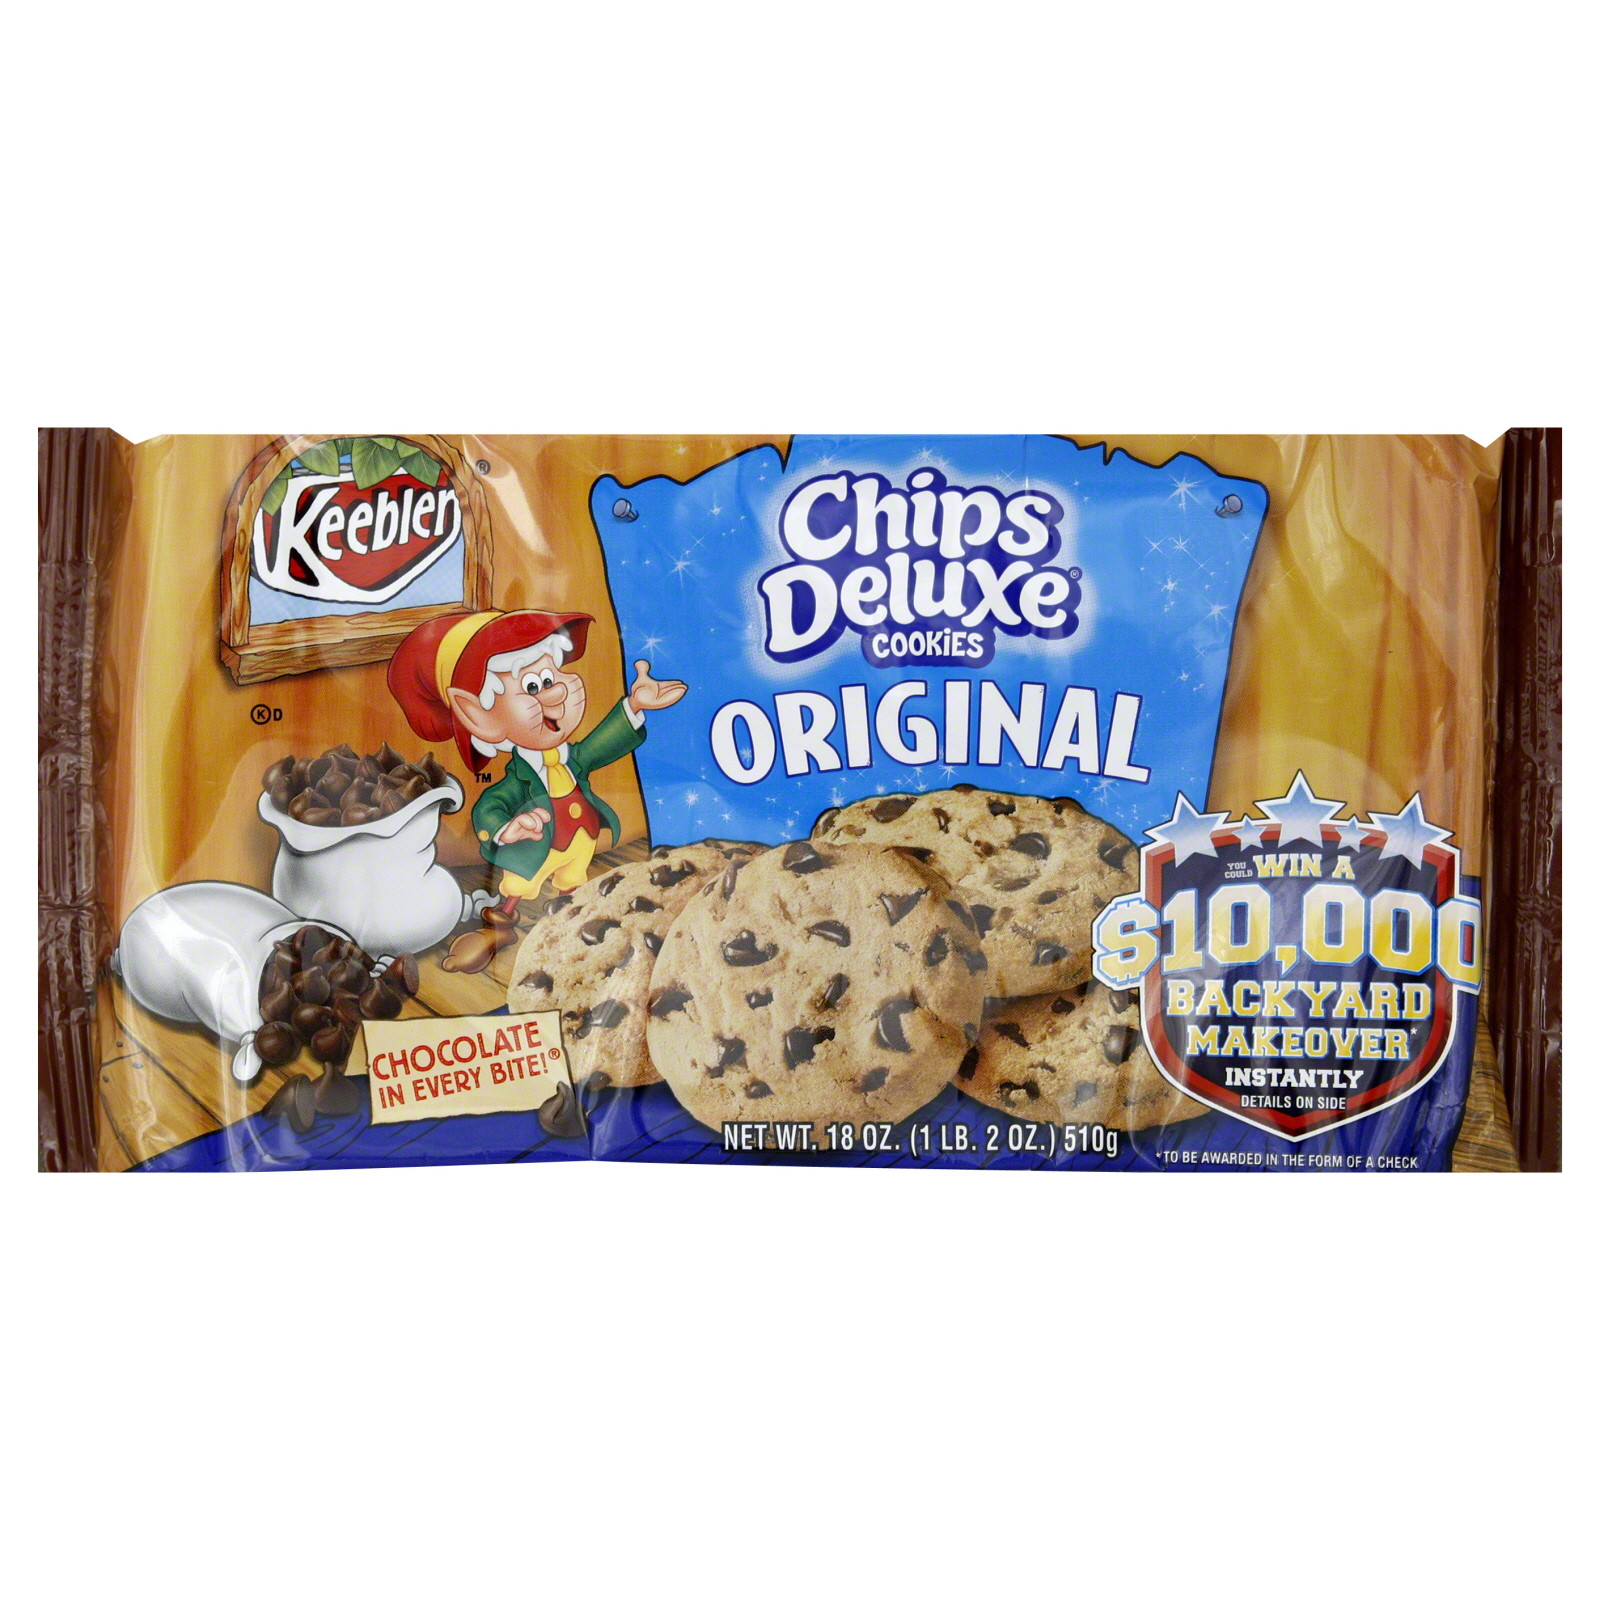 Keebler Christmas Cookies
 Keebler Chips Deluxe Cookies Original 18 oz 1 lb 2 oz